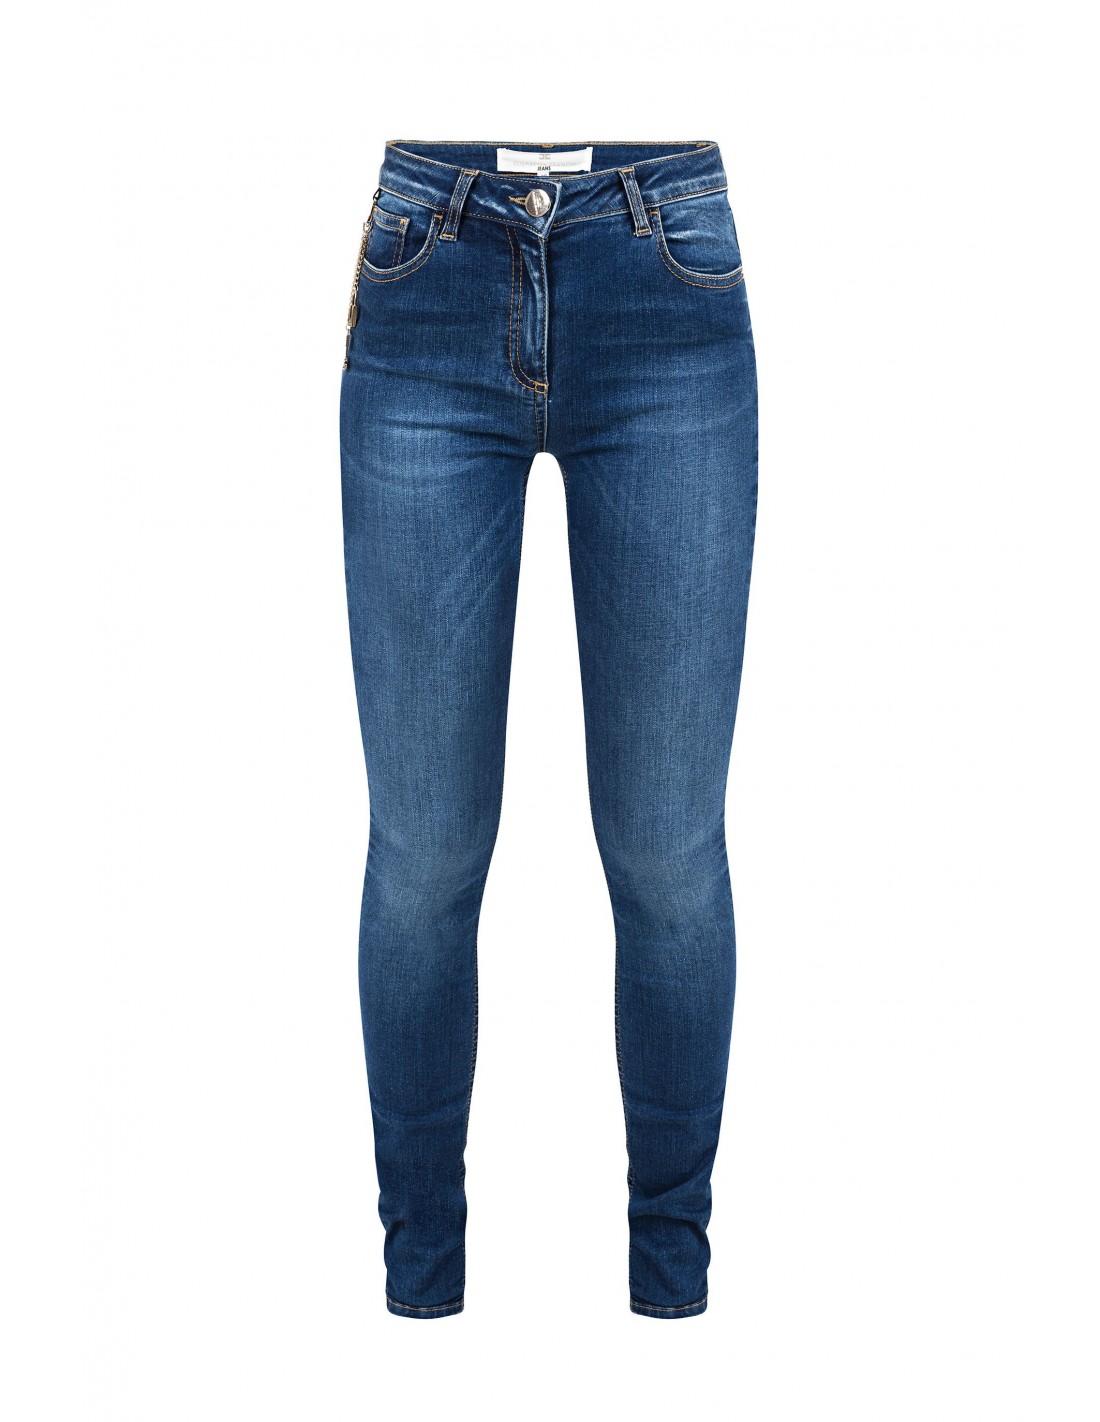 Jeans Con Cadenas Y Colgantes Elisabetta Franchi Altamoda Shop